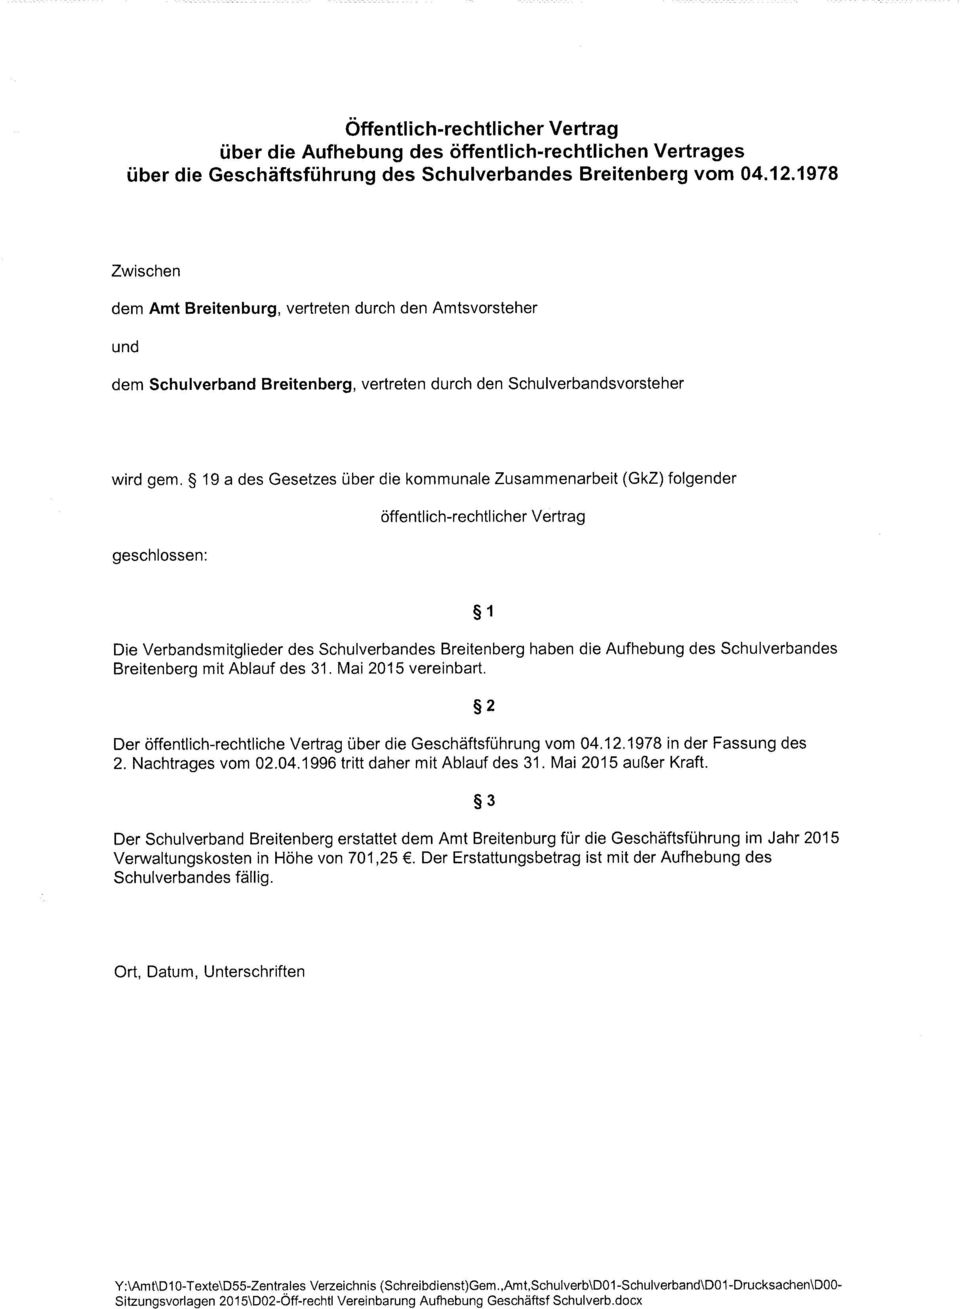 19 a des Gesetzes über die kommunale Zusammenarbeit (GkZ) folgender geschlossen: öffentlich-rechtlicher Vertrag 1 Die Verbandsmitglieder des Schulverbandes Breitenberg haben die Aufhebung des